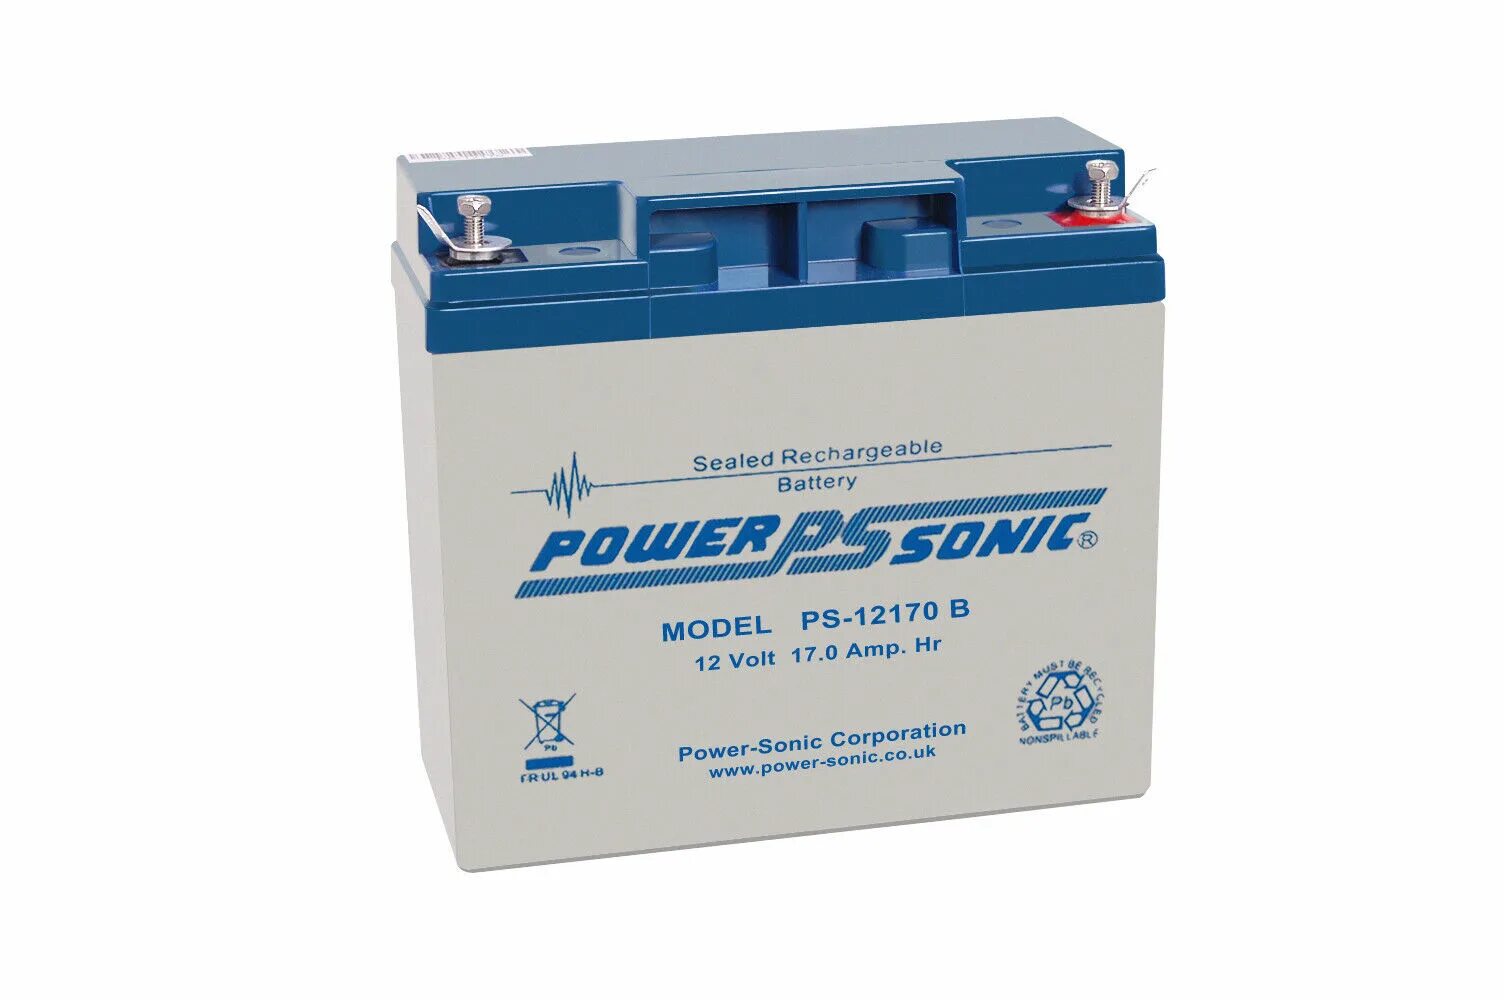 Аккумулятор Daewoo SP Battery 12v 9ah. Аккумулятор Power Sonic PS-1212 12v, 1.4. Lead acid 12 v 5ah аккумулятор. Daewoo SP Battery аккумулятор 12v 32ah t6. Www 12v